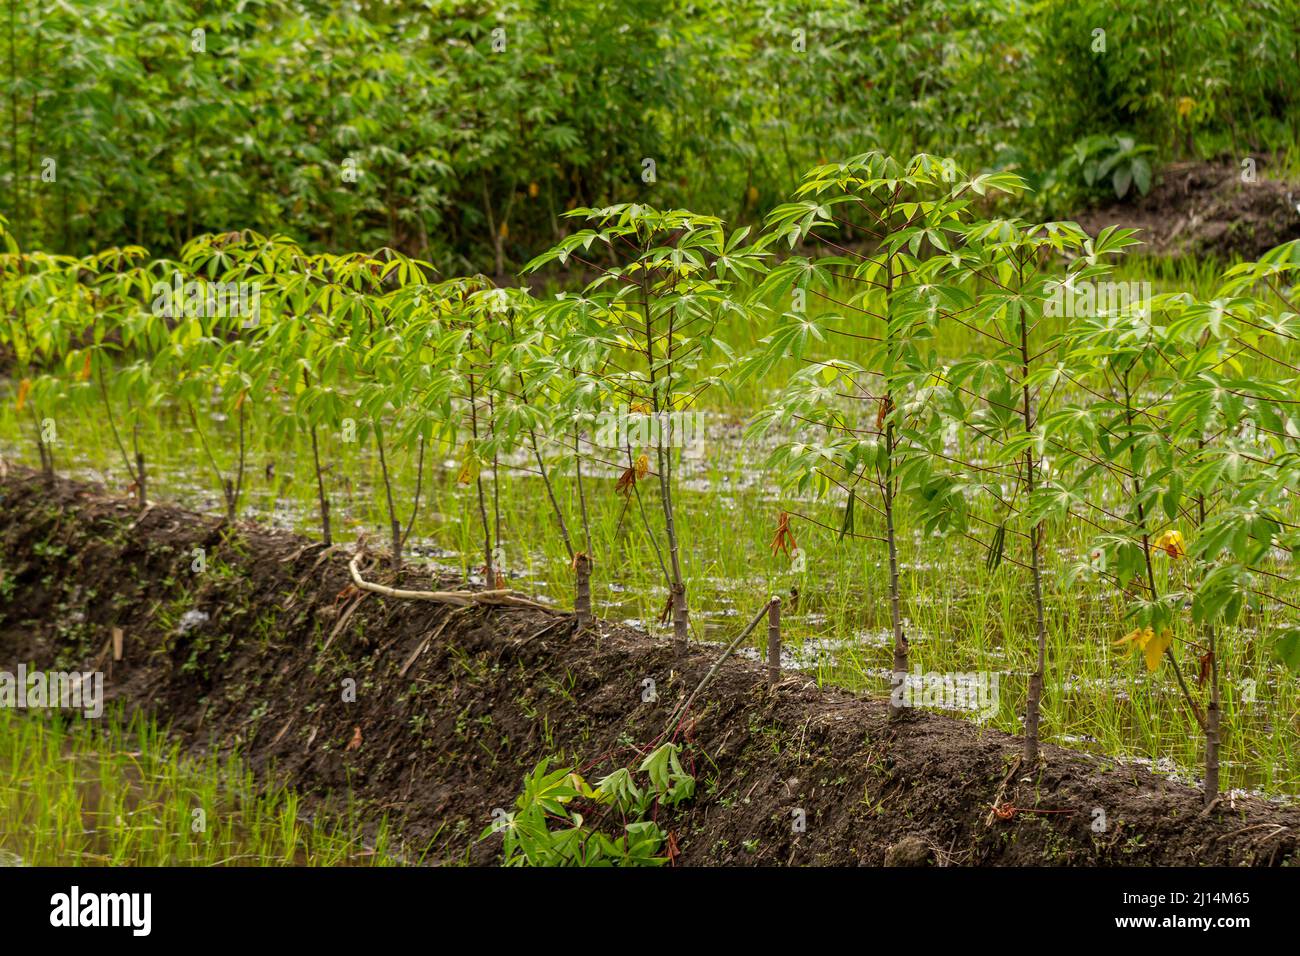 La plante de manioc qui pousse sur les champs de riz, est utilisée comme une culture supplémentaire, les feuilles sont utilisées pour les légumes et les tubercules sont comestibles, l'expansion des terres Banque D'Images